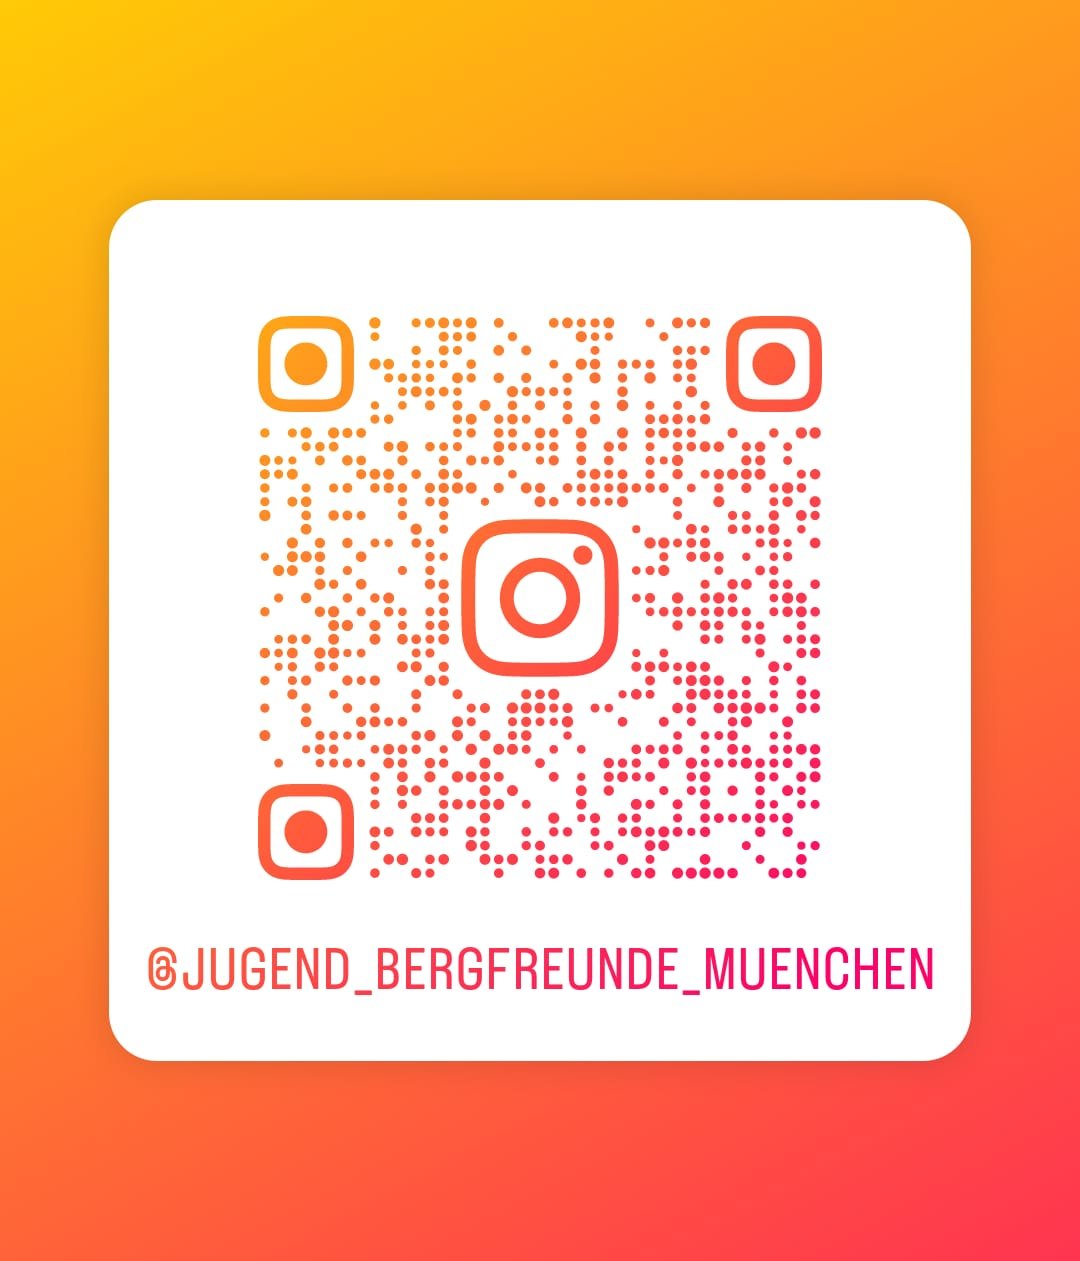 Link zu Instagram Jugend Bergfreunde München | © Bergfreunde München/TAN